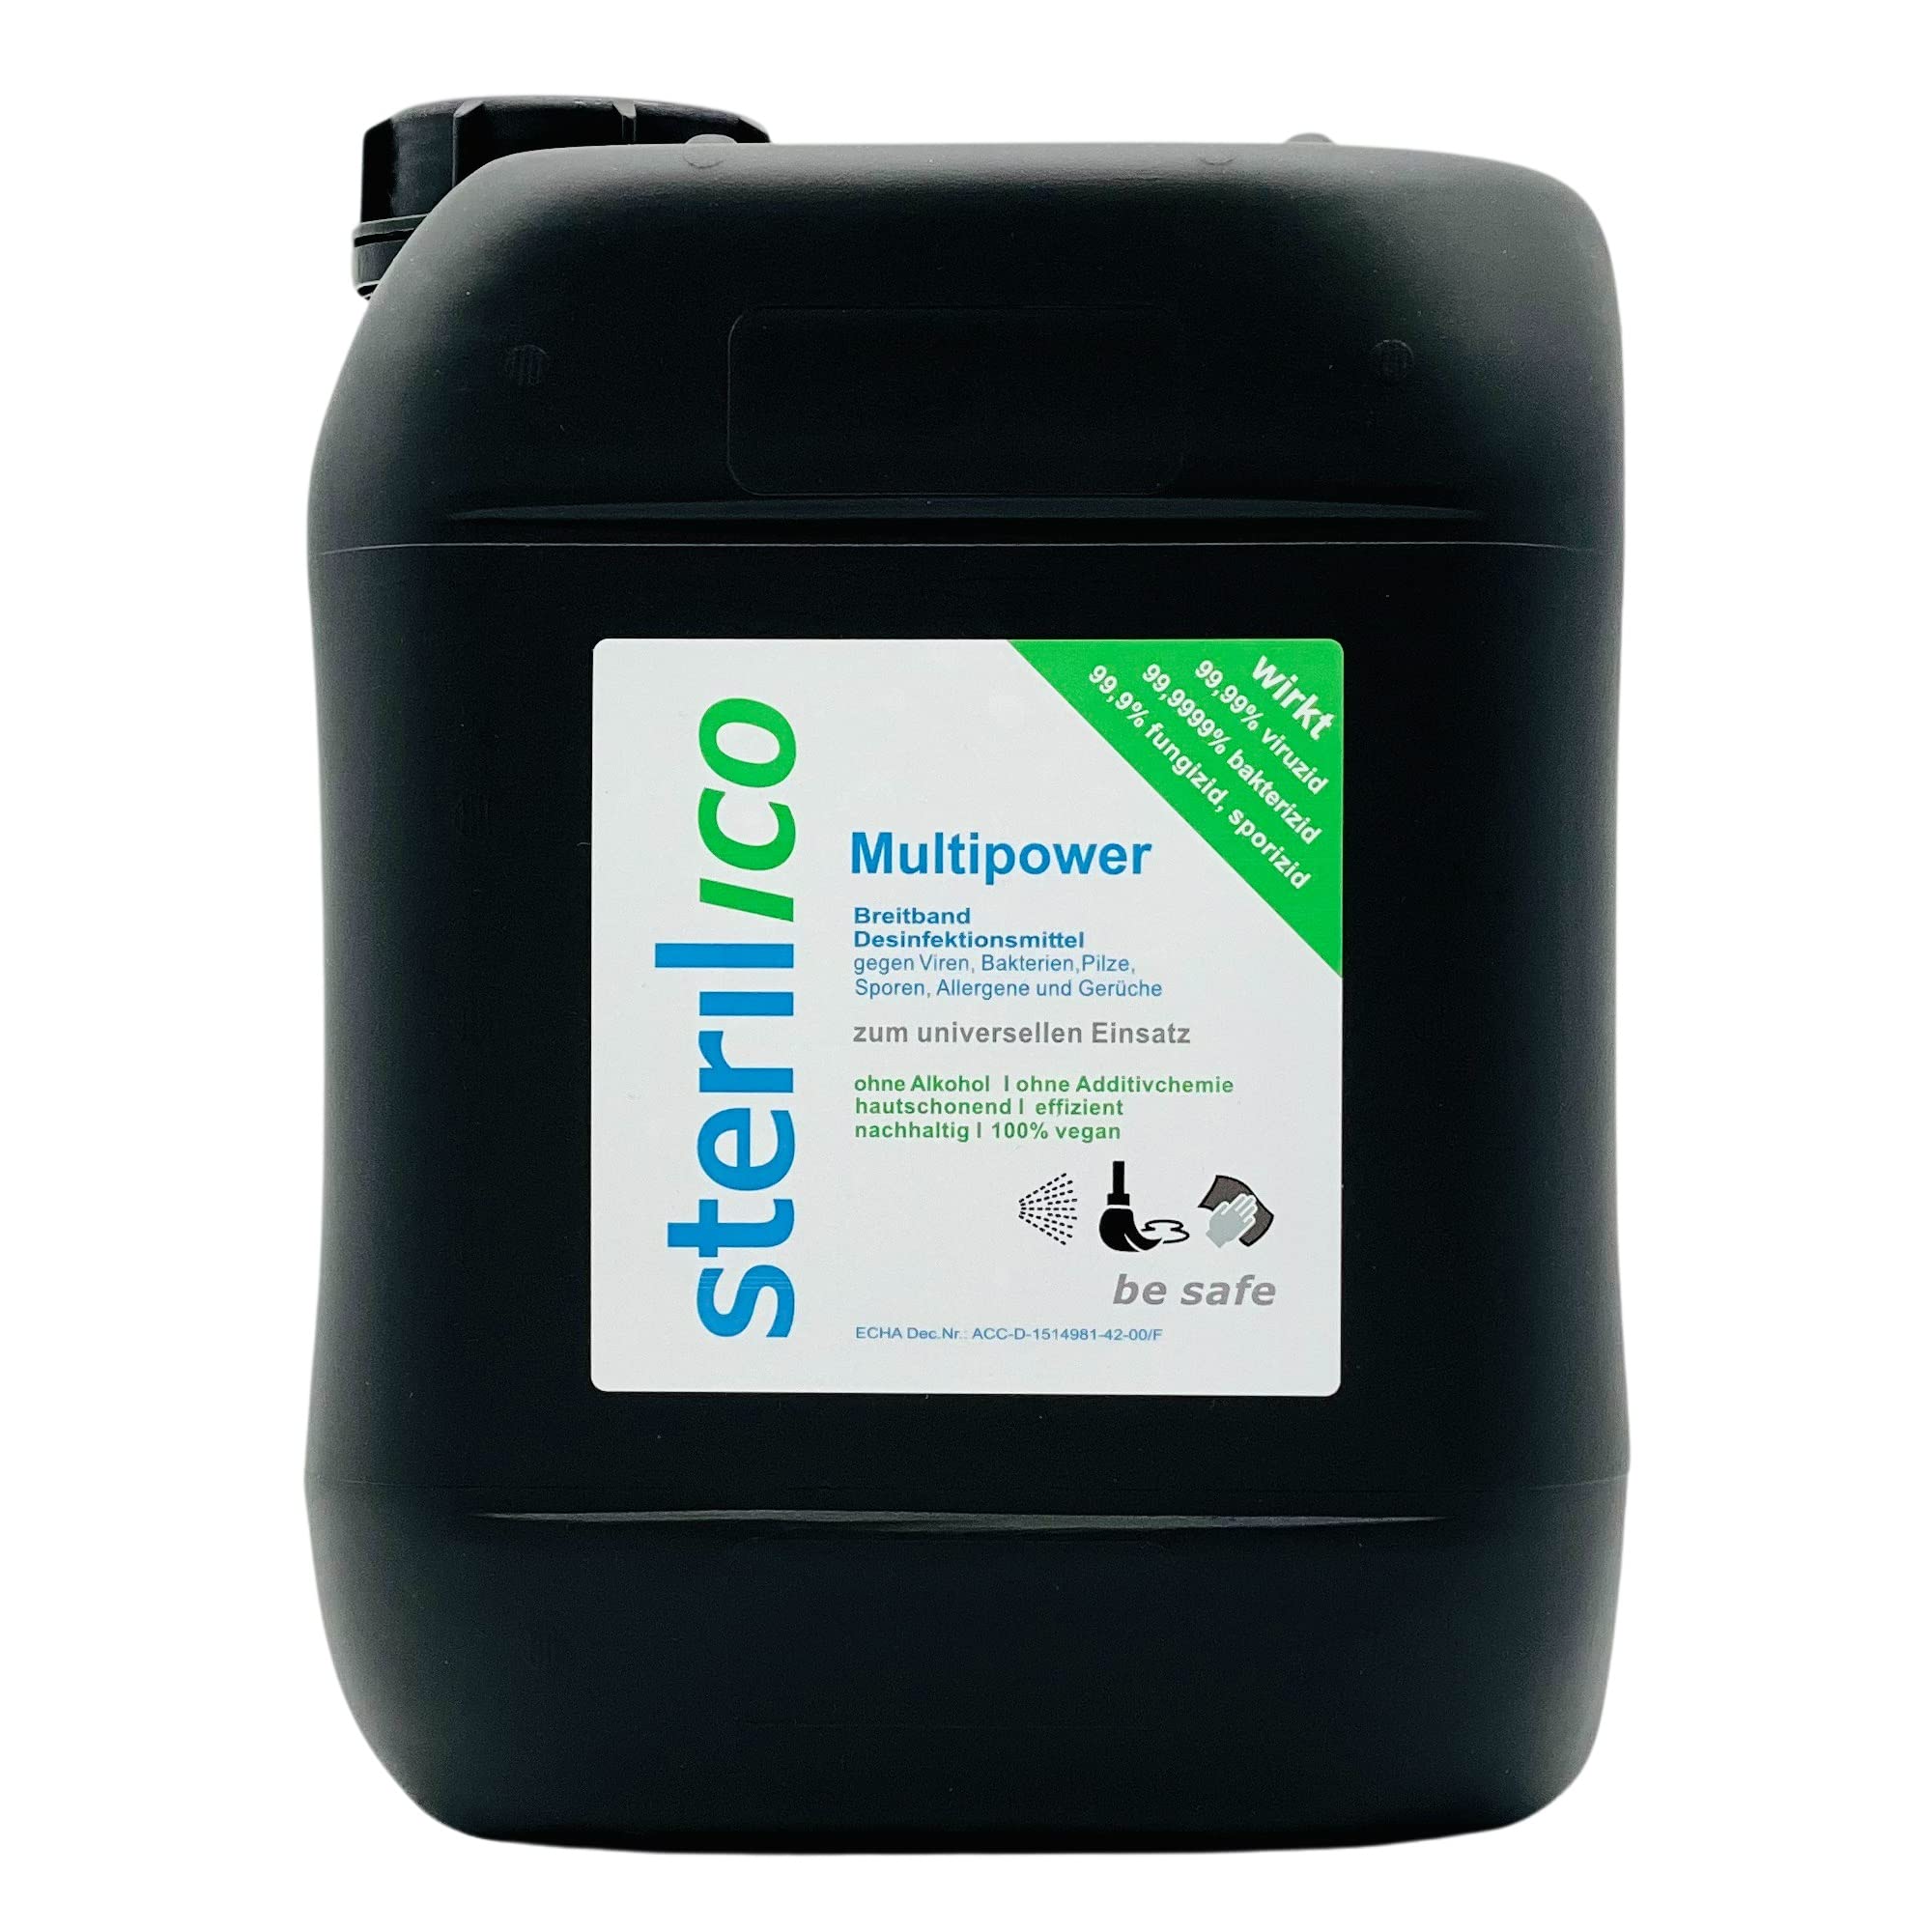 sterilico – Multipower – Desinfektionsmittel zum universellen Einsatz in Haushalt, Gewerbe und Industrie (5l)